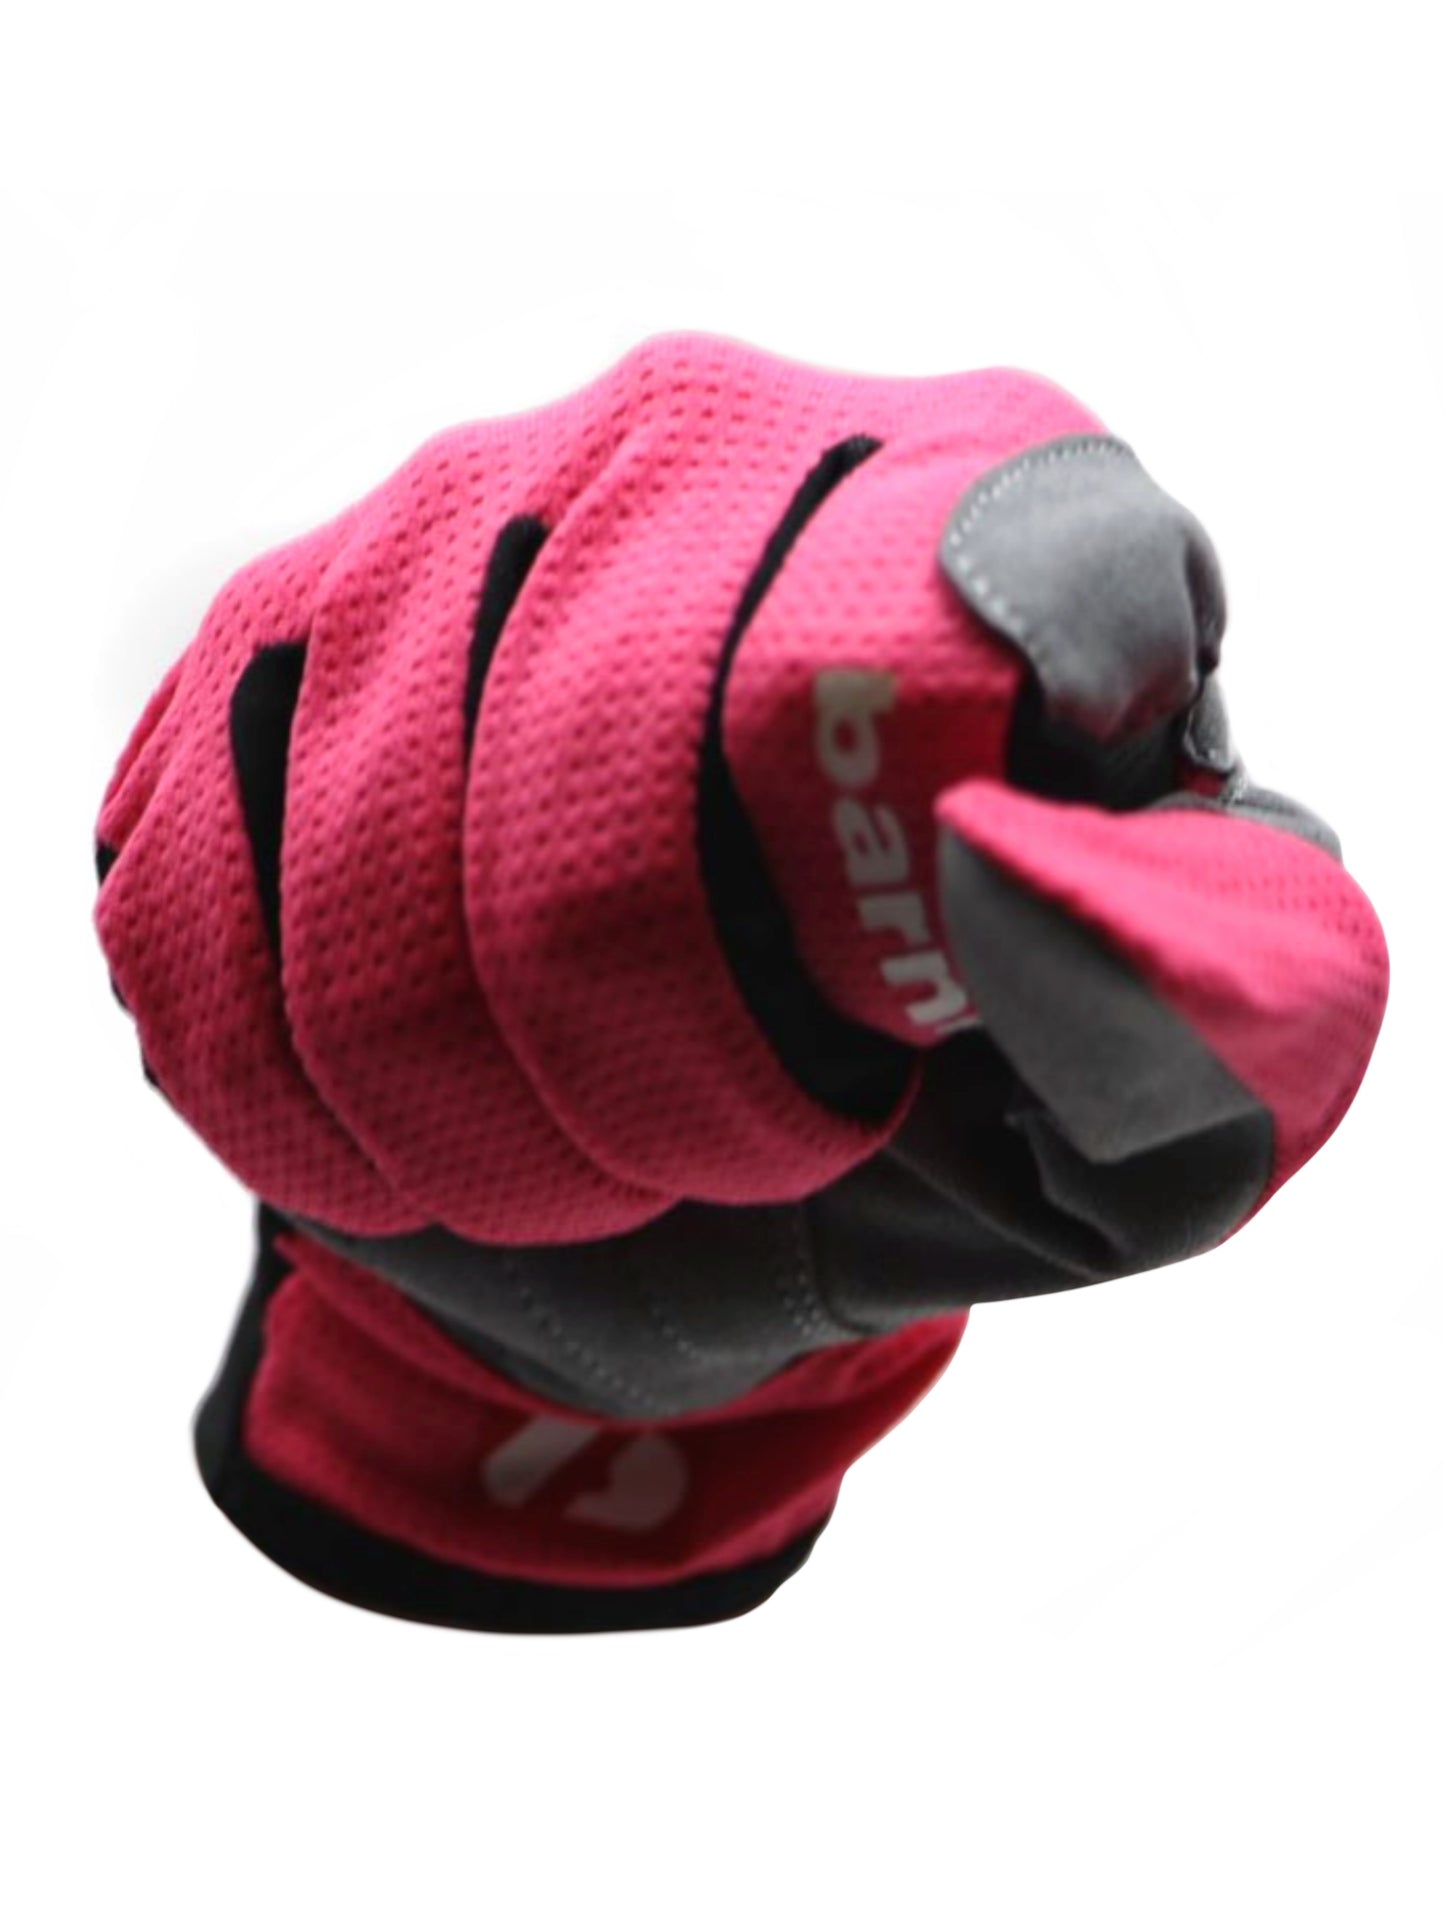 NBG-18  Gloves for Rollerski - cross-country - road bike - running